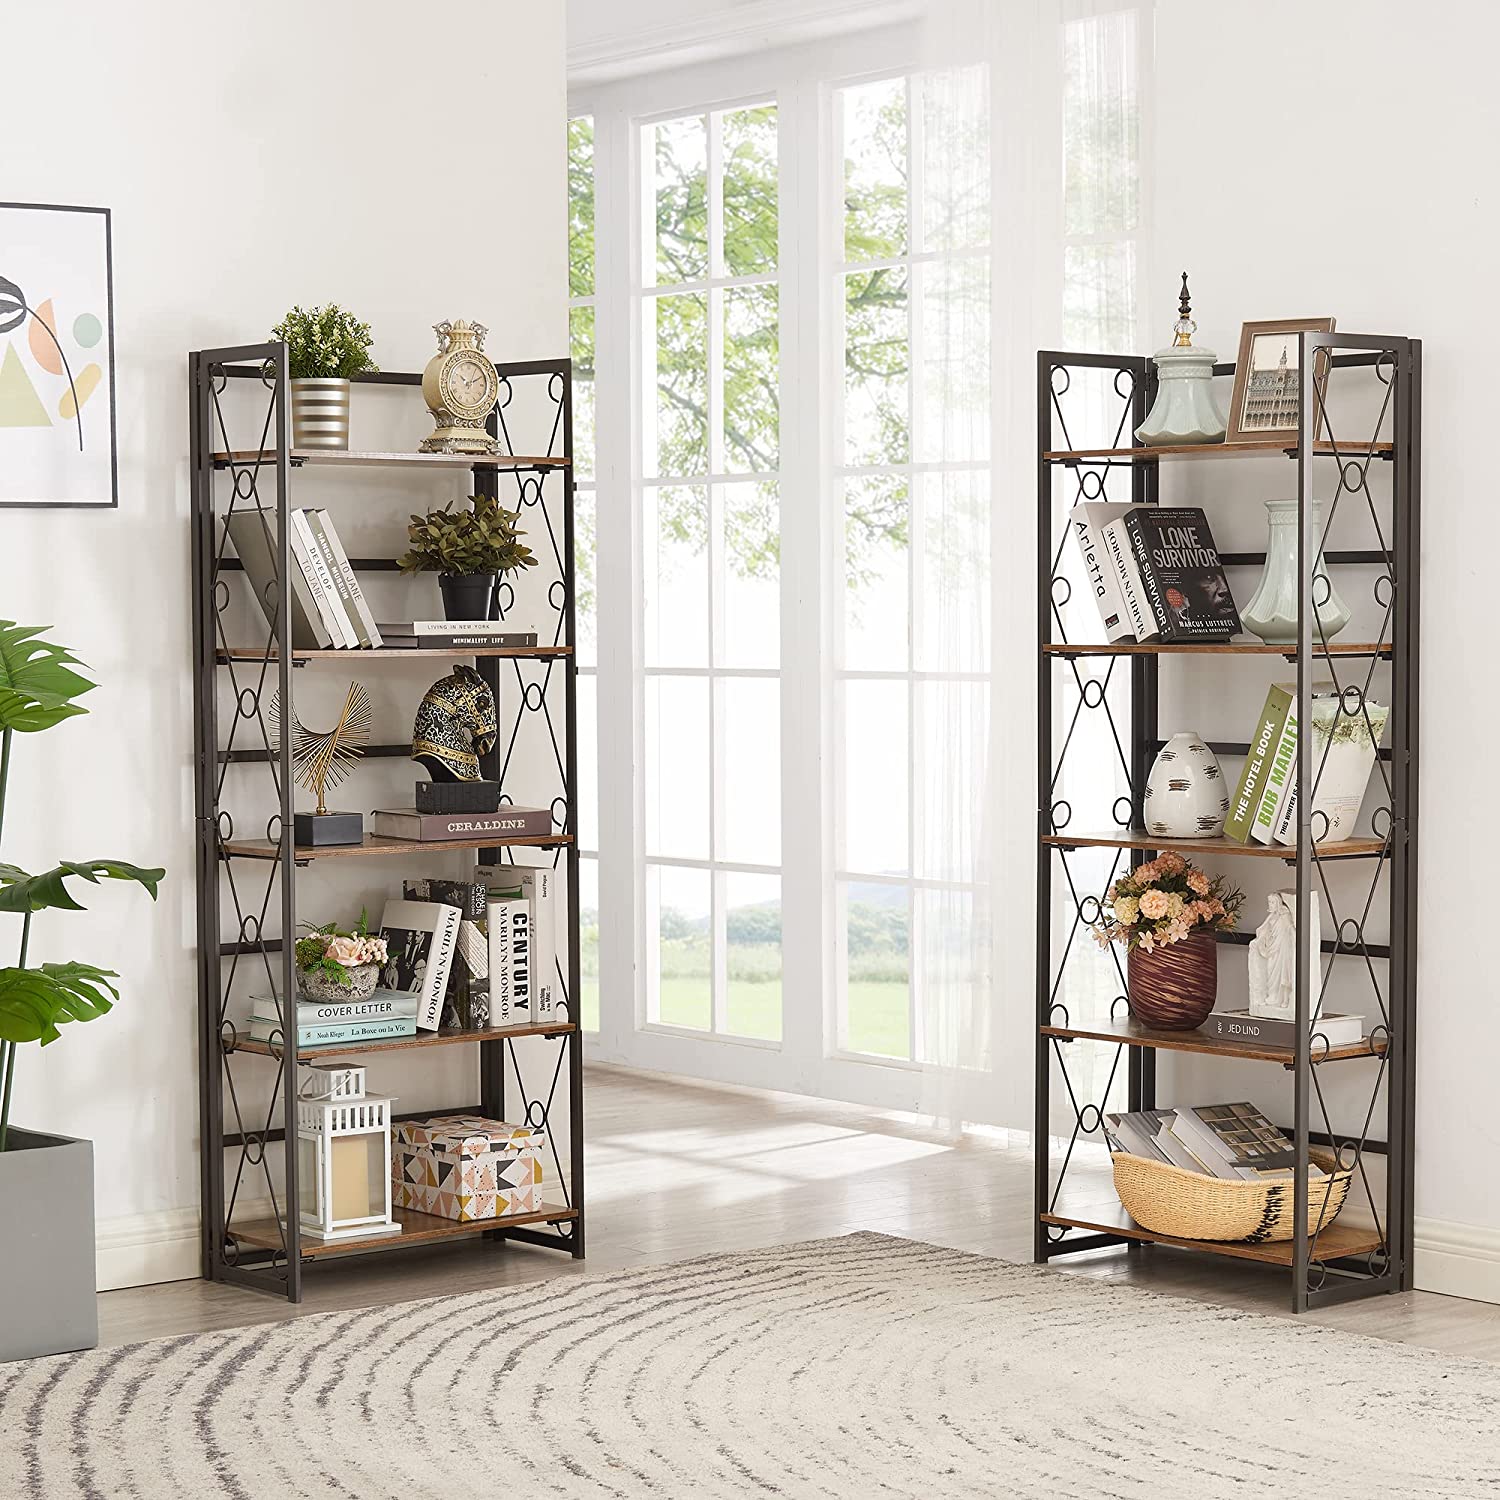 VECELO Bookshelf No Assembly, 5 Shelf Folding Bookcase, Book Shelves Organizer